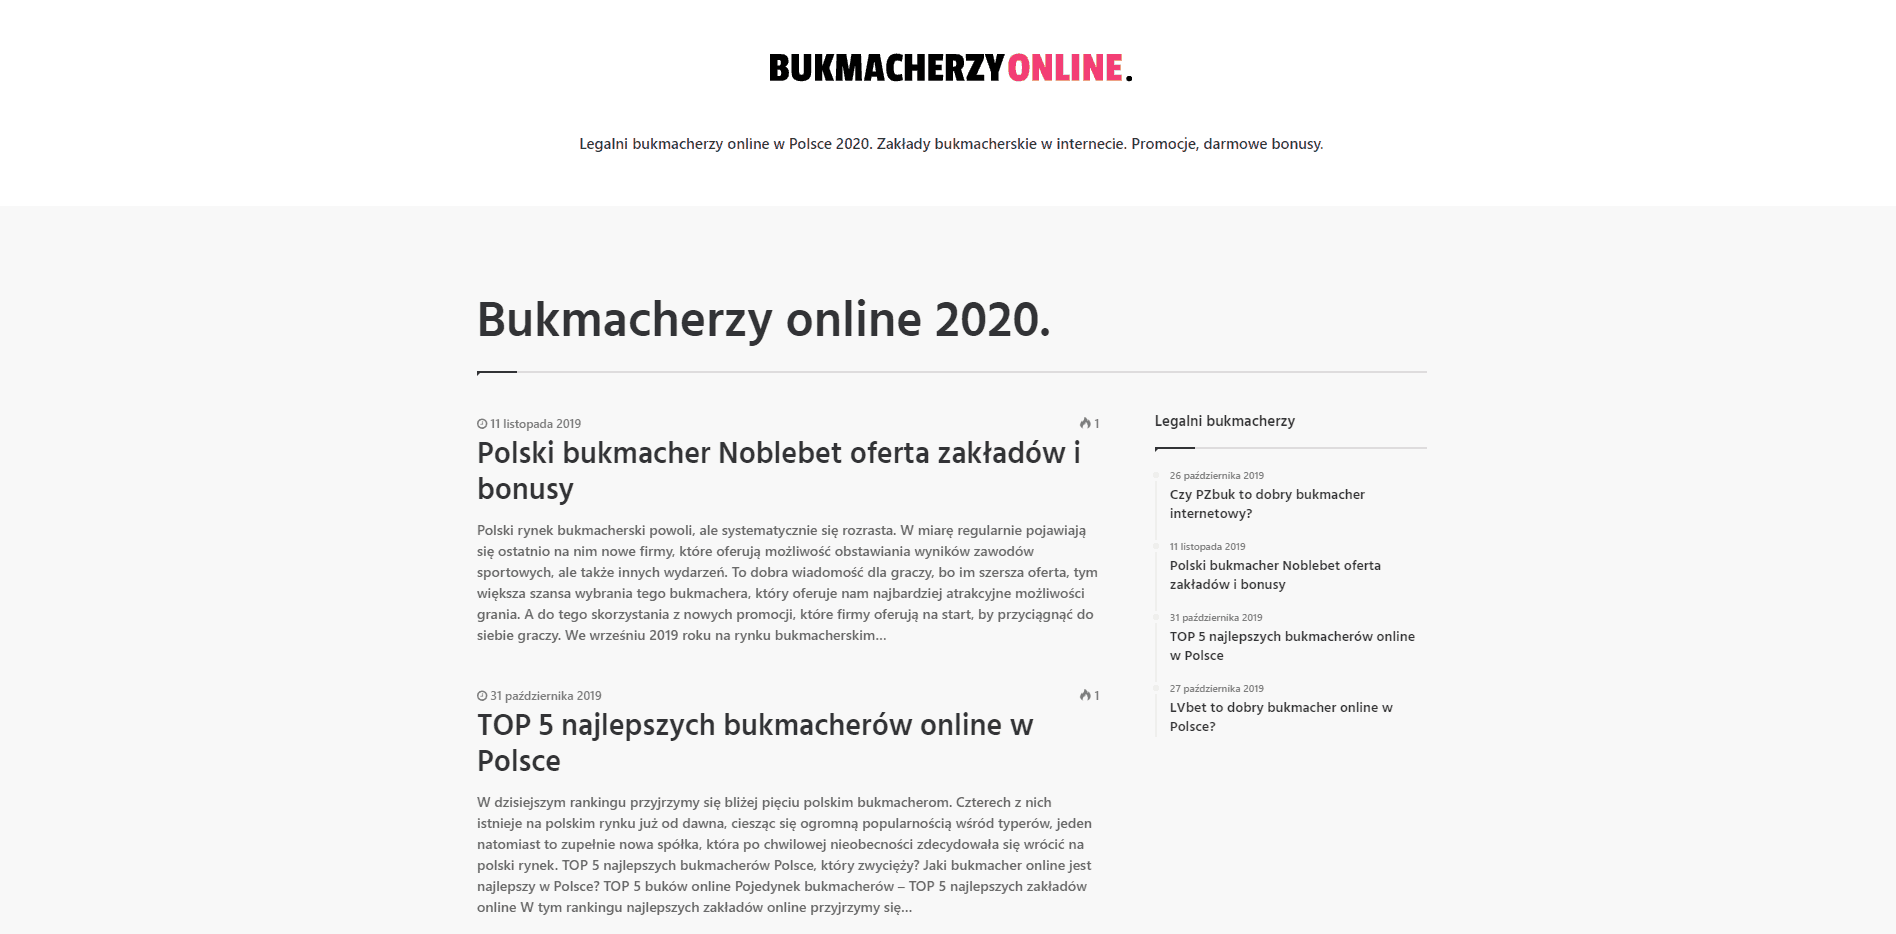 BUKMACHERZYONLINE.COM.PL